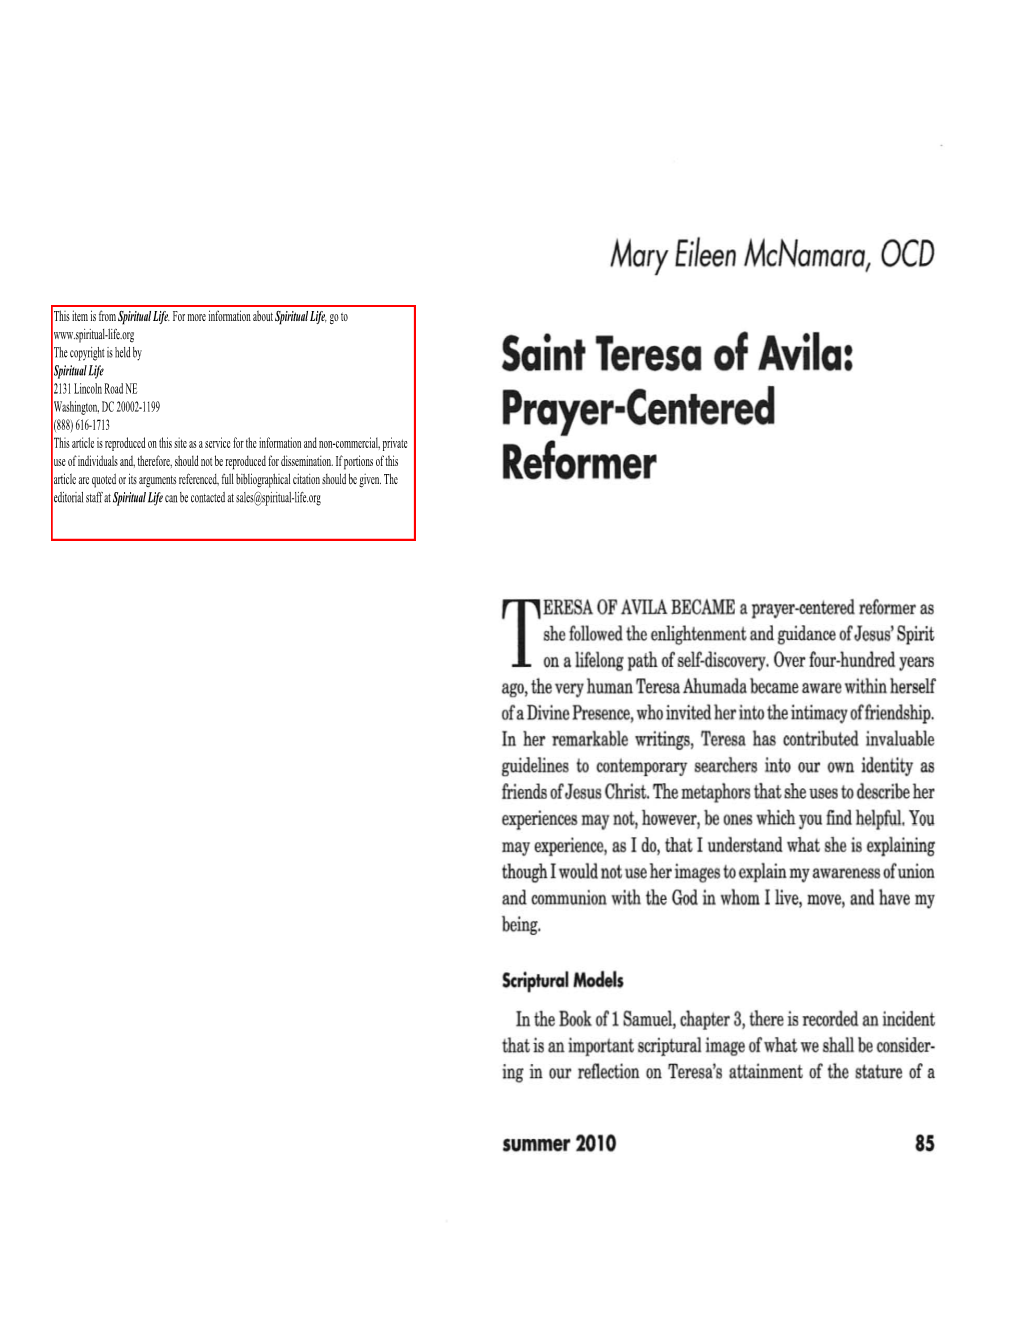 Saint Teresa of Avila: Prayer-Centered Reformer